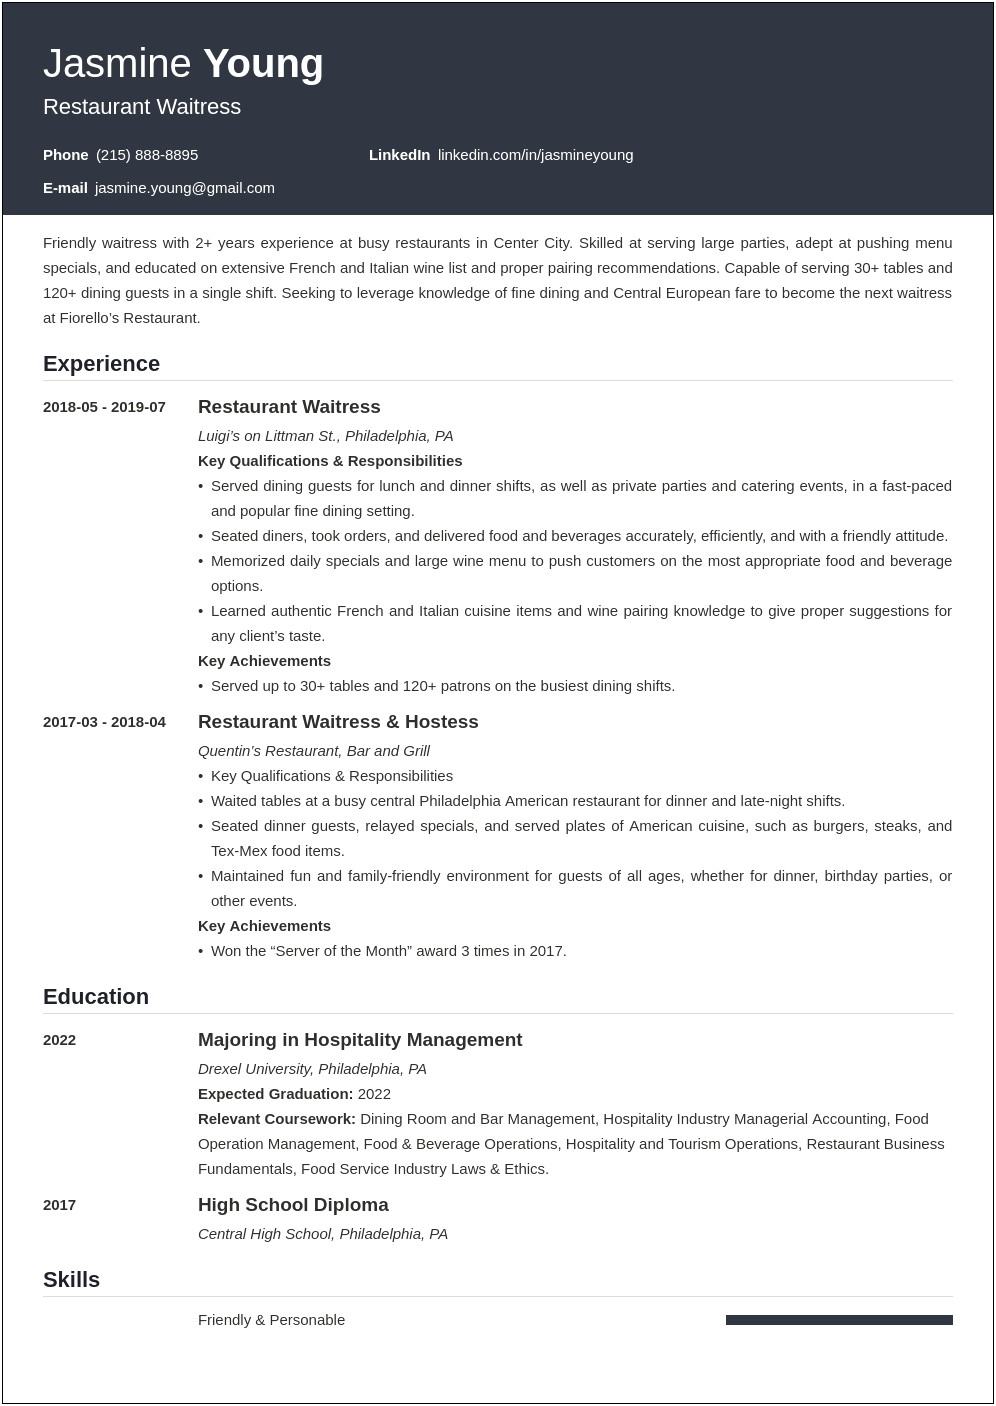 Job Description Of A Waitress Resume